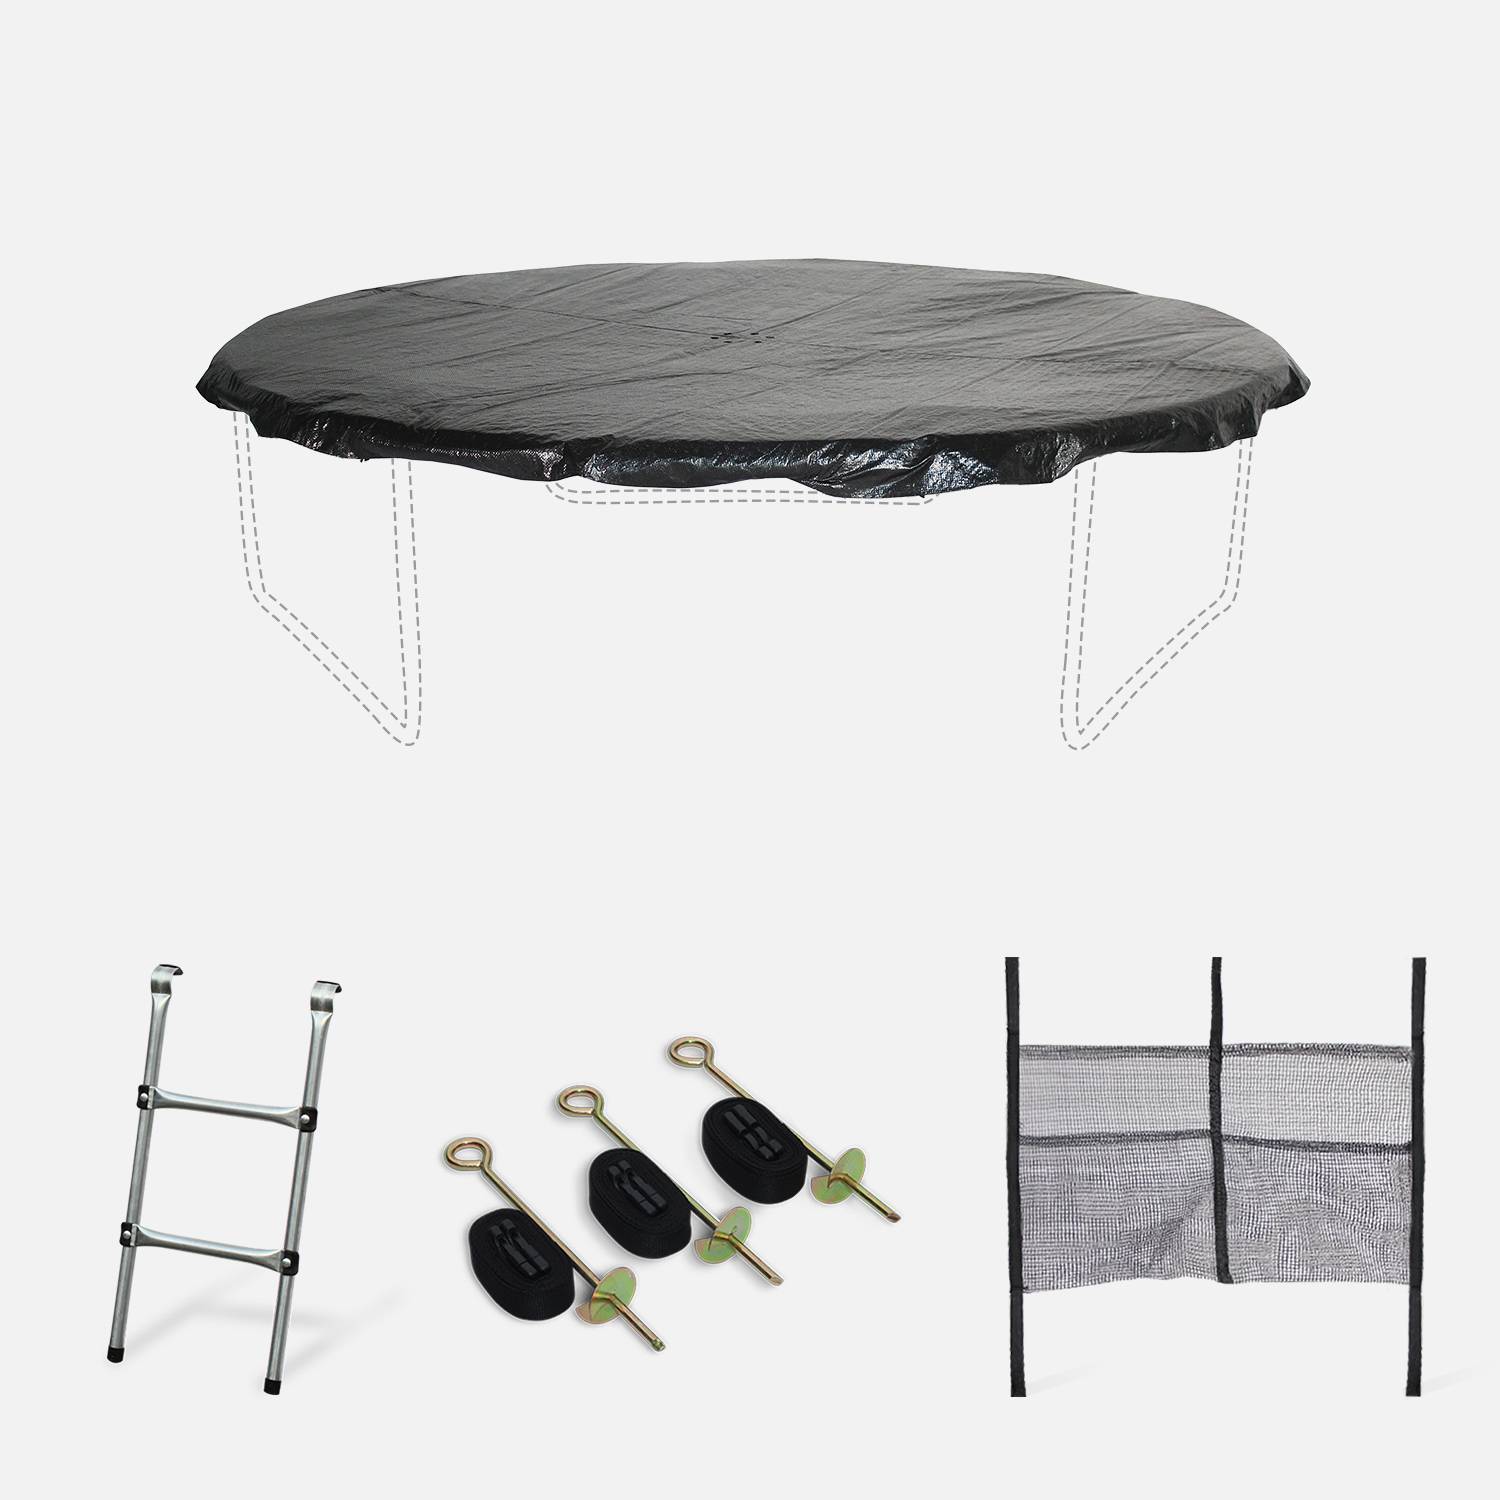 Pakket met accessoires voor trampoline Ø250cm Pluton, Pluton Inner en Gemeaux met een ladder, een beschermhoes, een opbergnet voor schoenen en een verankeringskit Photo1